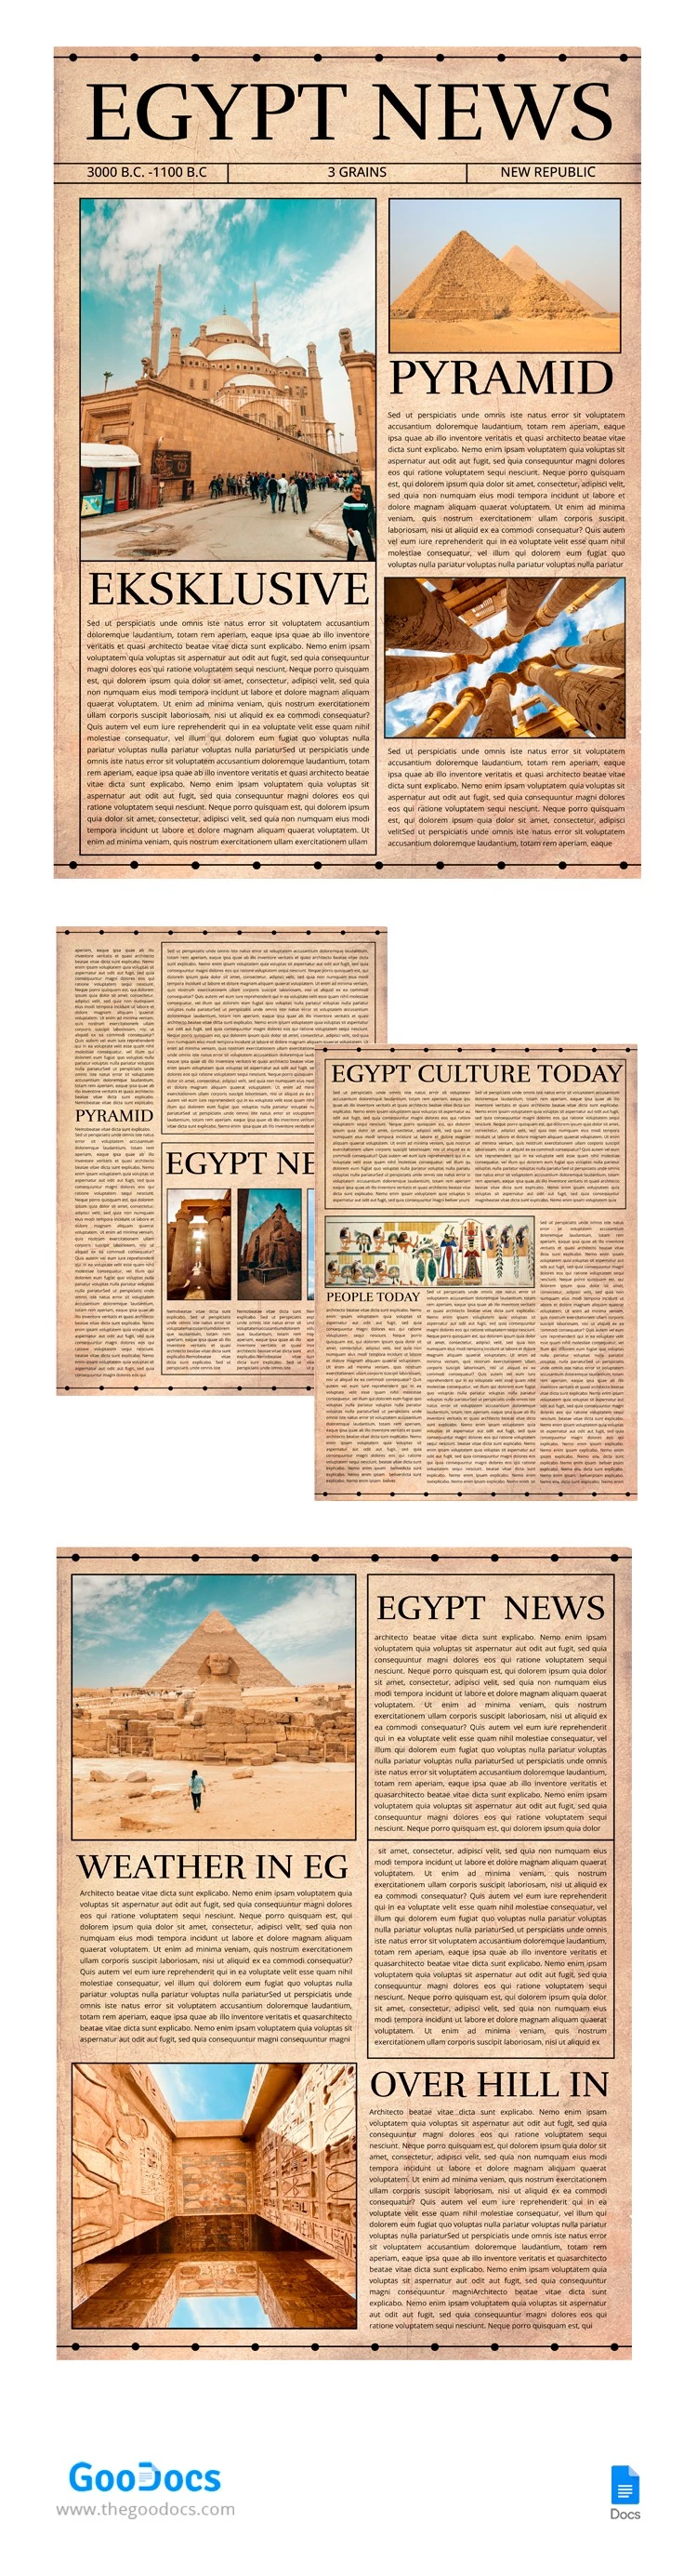 Periódico de Egipto - free Google Docs Template - 10065740